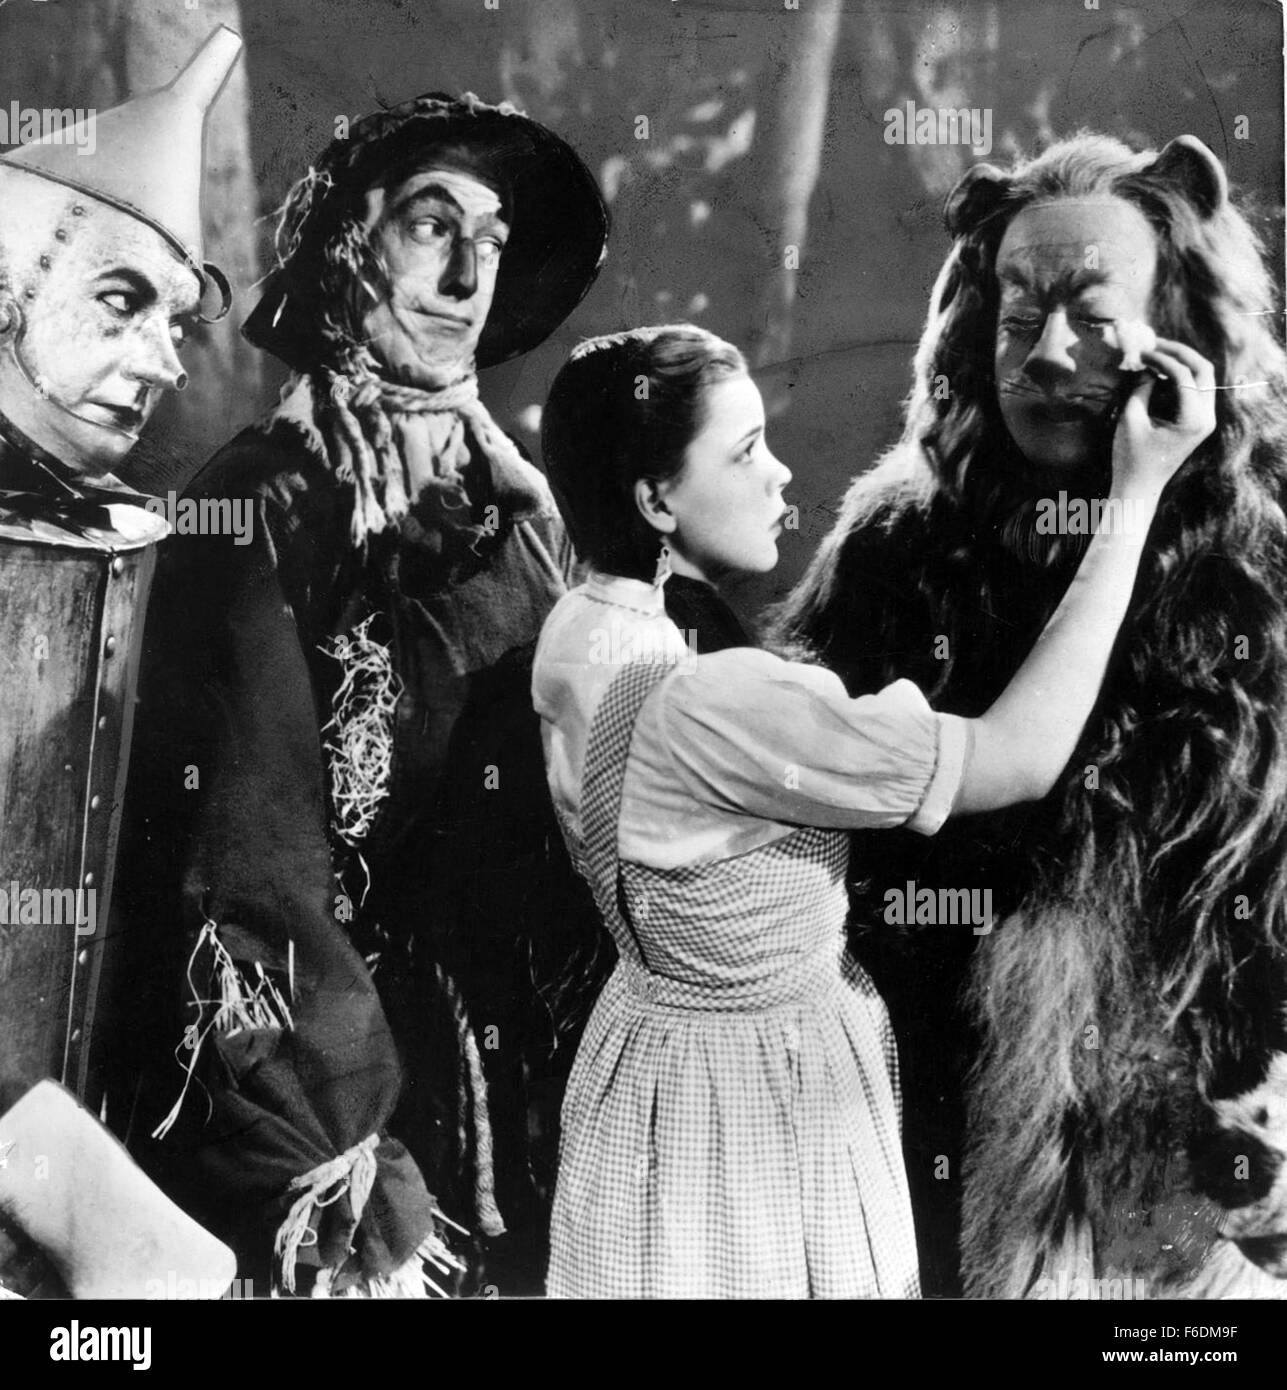 VERÖFFENTLICHT: 12. August 1939 - Film Originaltitel: The Wizard of Oz abgebildet: JACK HALEY, JUDY GARLAND, Strahl BOLGER, BERT LAHR. Stockfoto